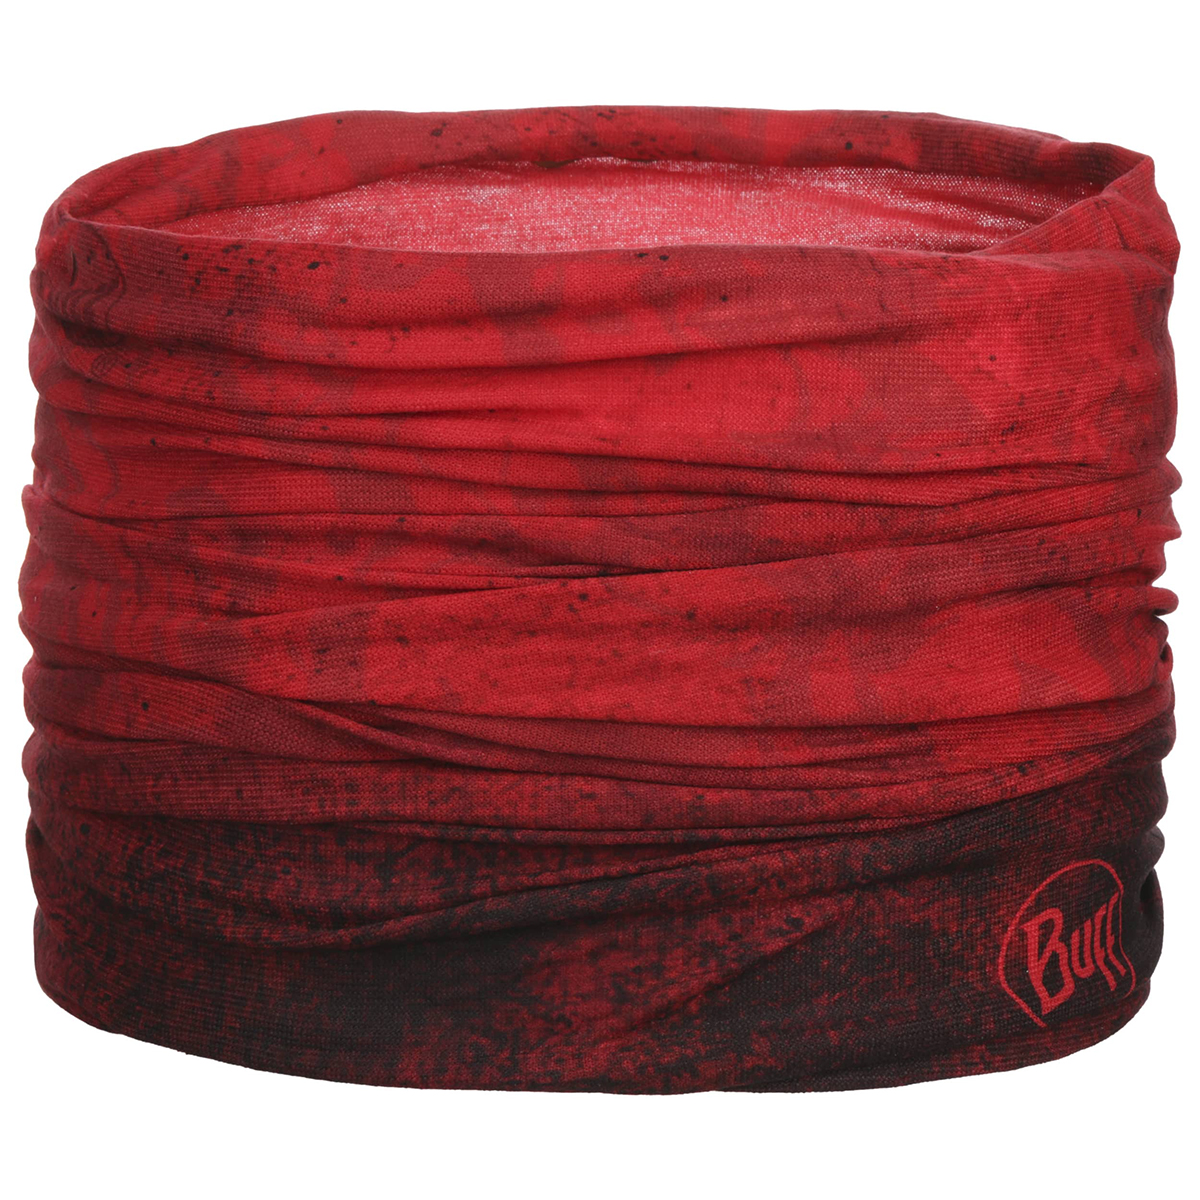 دستمال سر و گردن باف مدل Katmandu